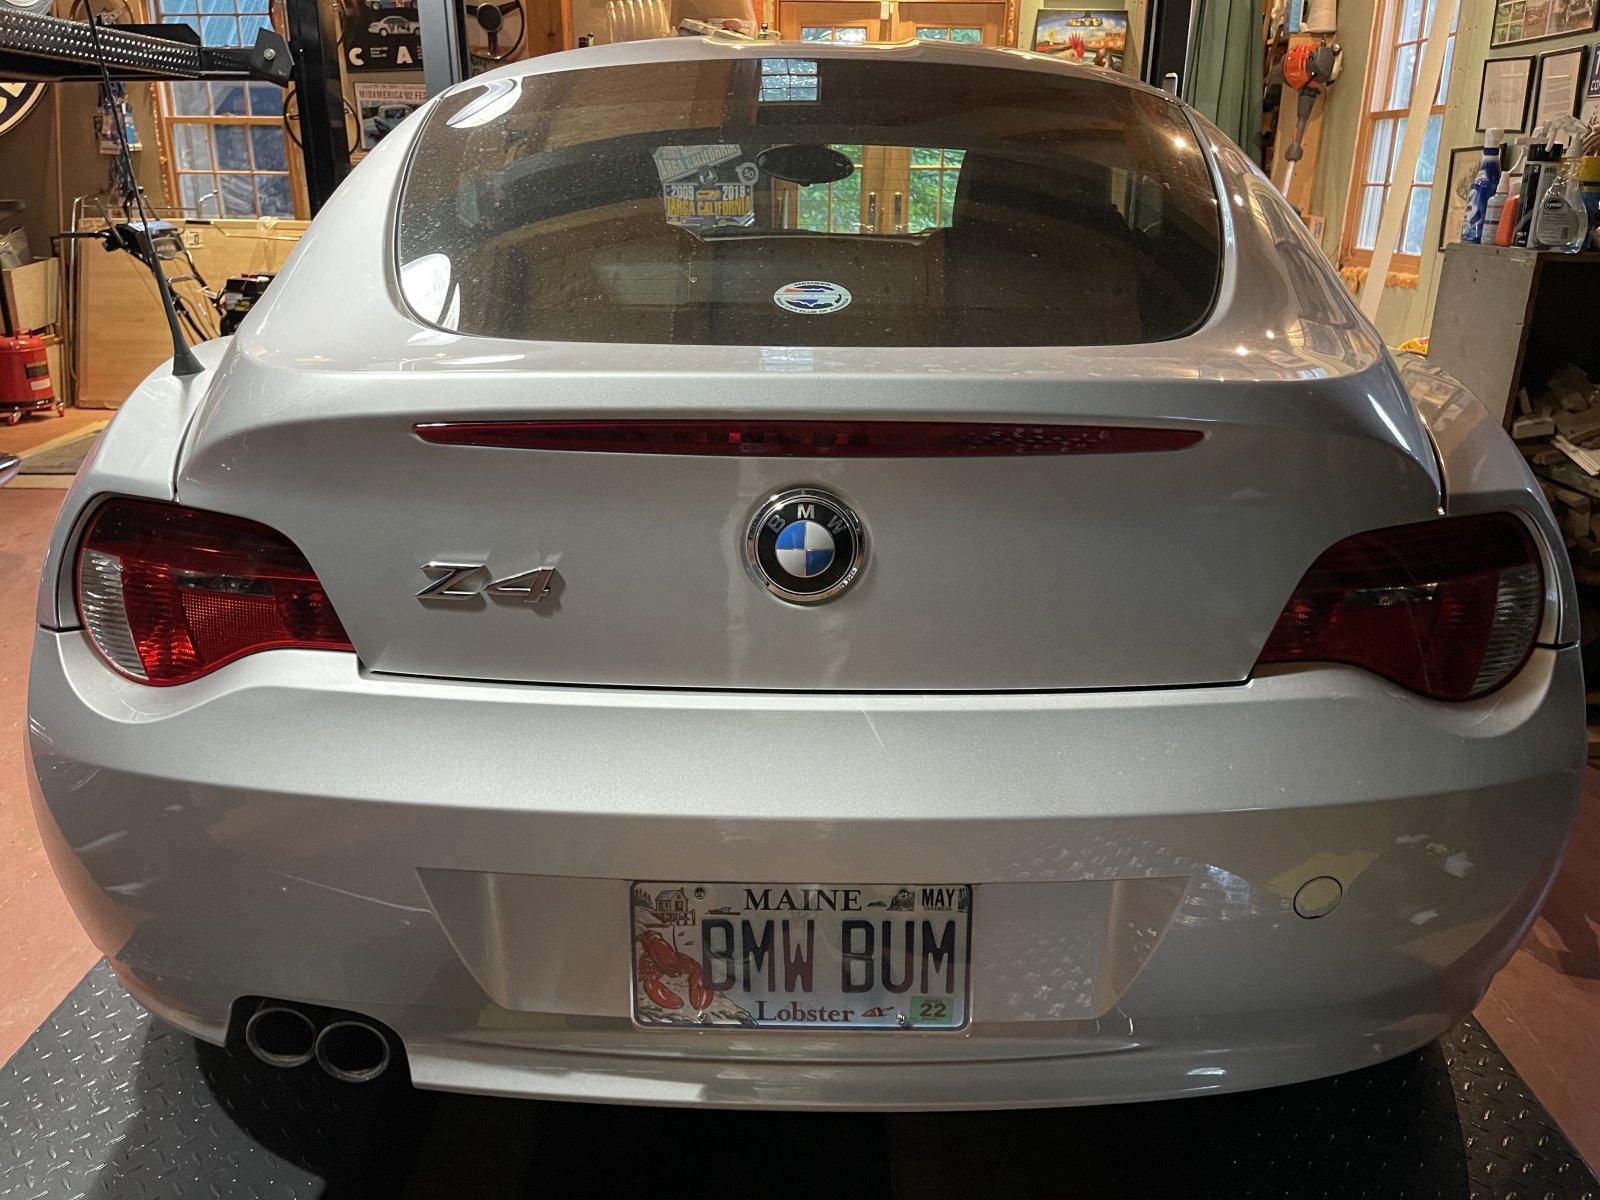 Z4 BMW Bum Rear.jpeg